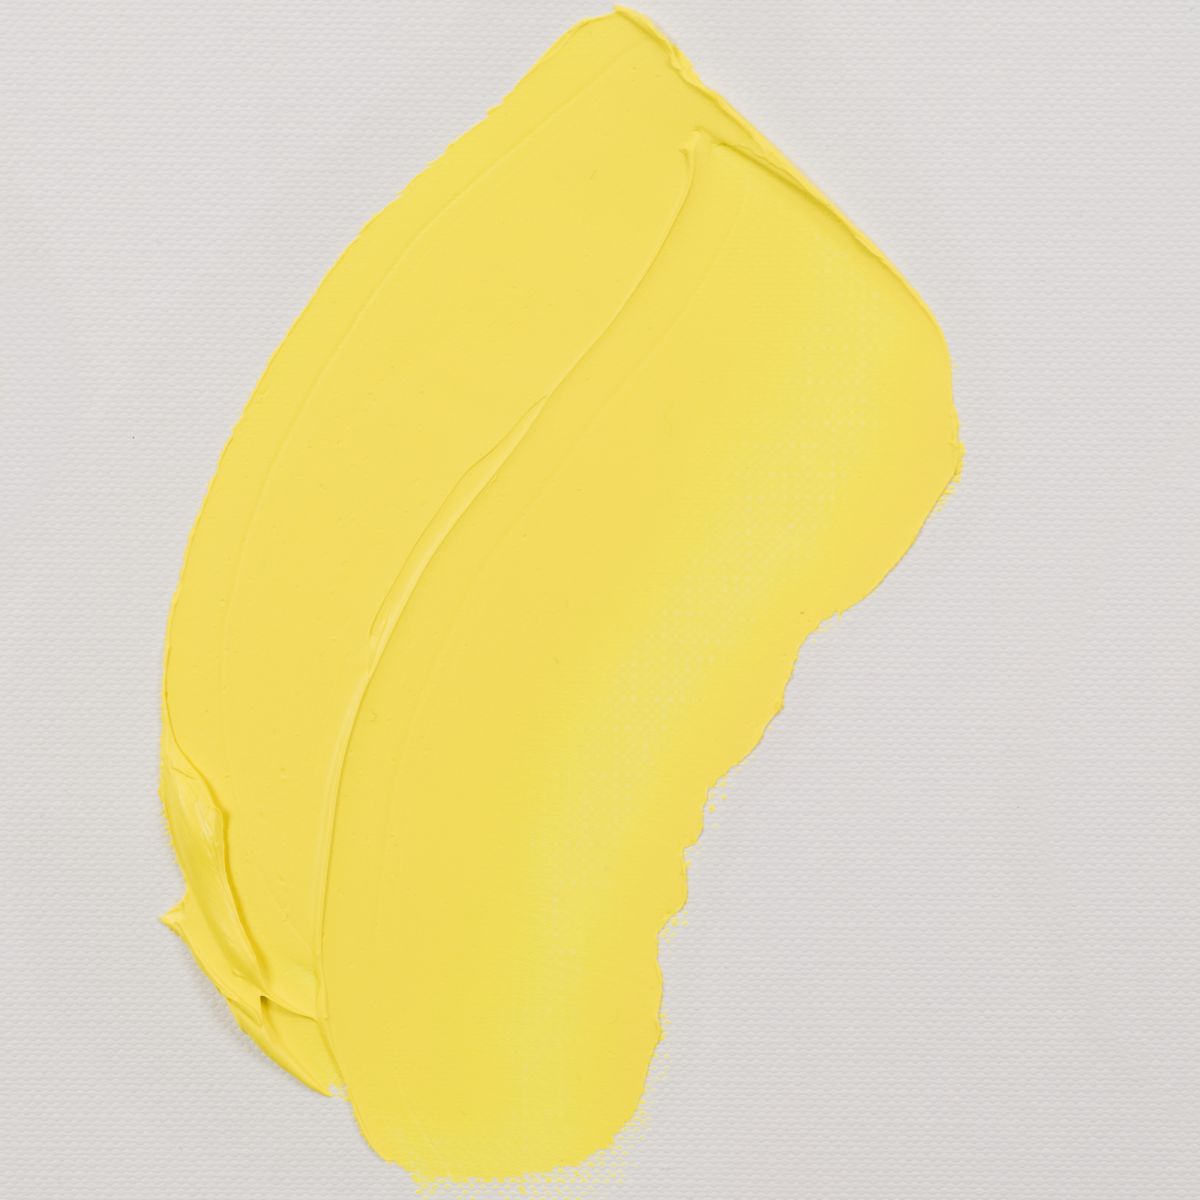 Azo yellow lemon